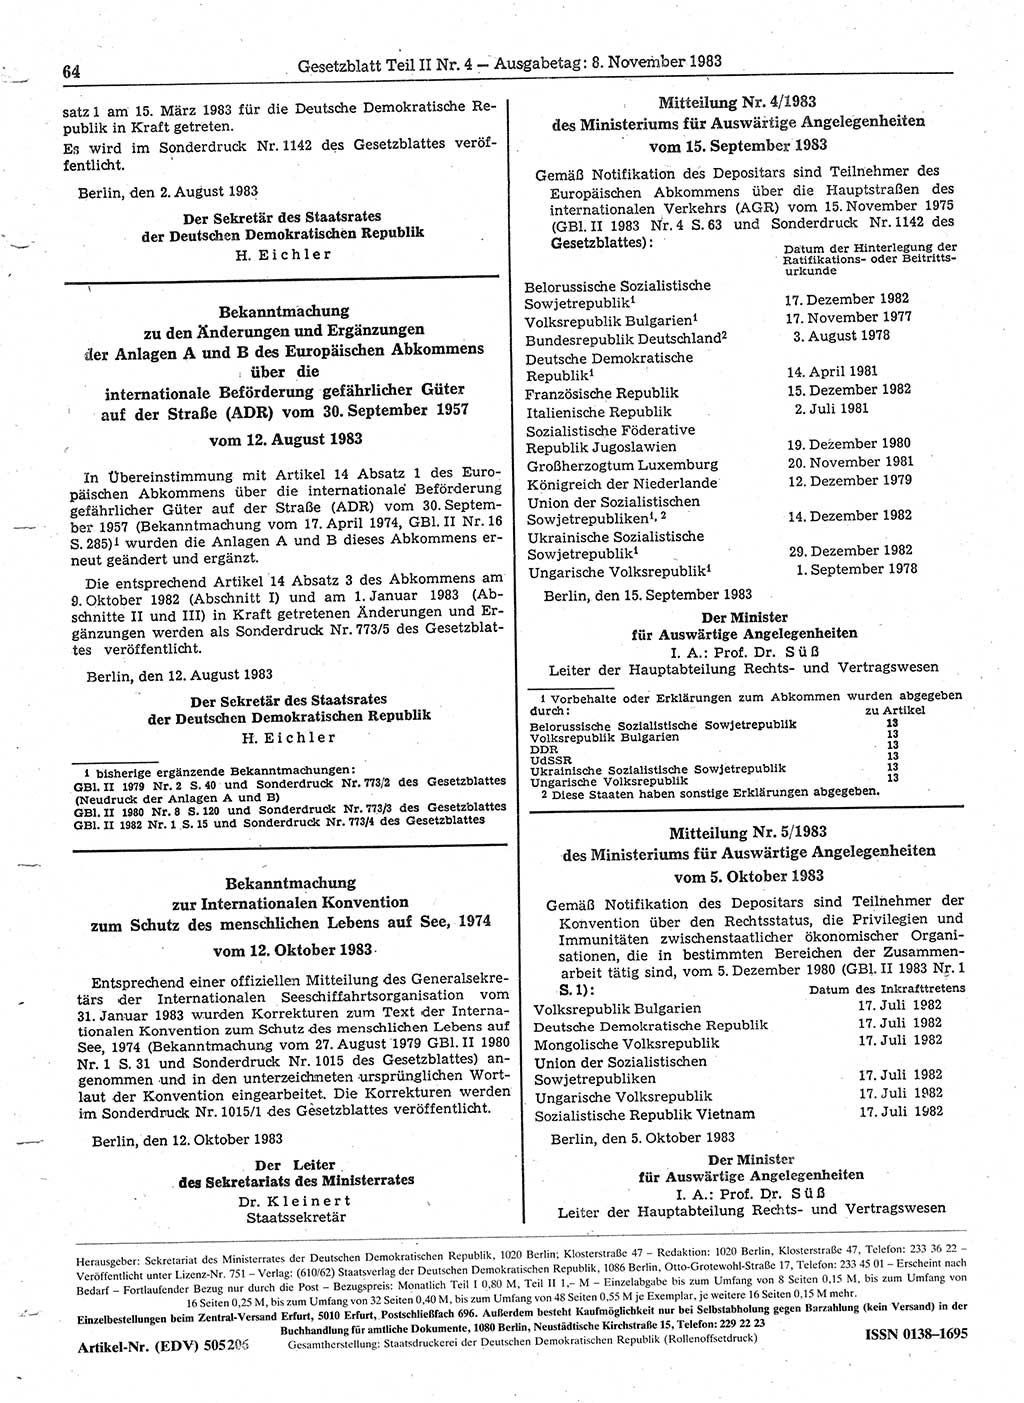 Gesetzblatt (GBl.) der Deutschen Demokratischen Republik (DDR) Teil ⅠⅠ 1983, Seite 64 (GBl. DDR ⅠⅠ 1983, S. 64)